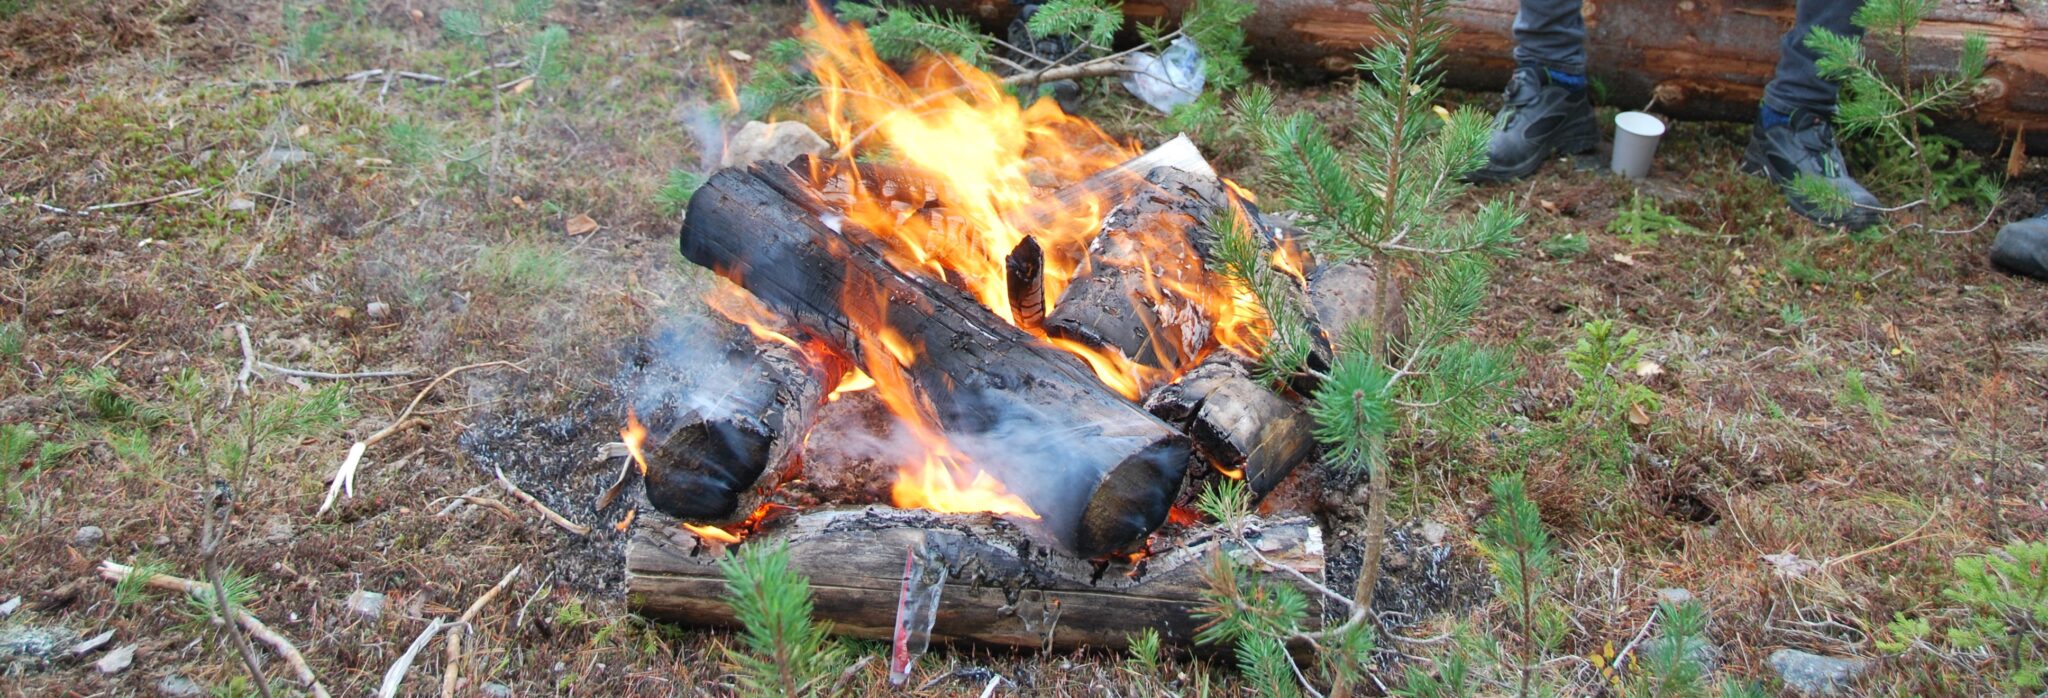 Forbud mot åpen ild i skog og utmark